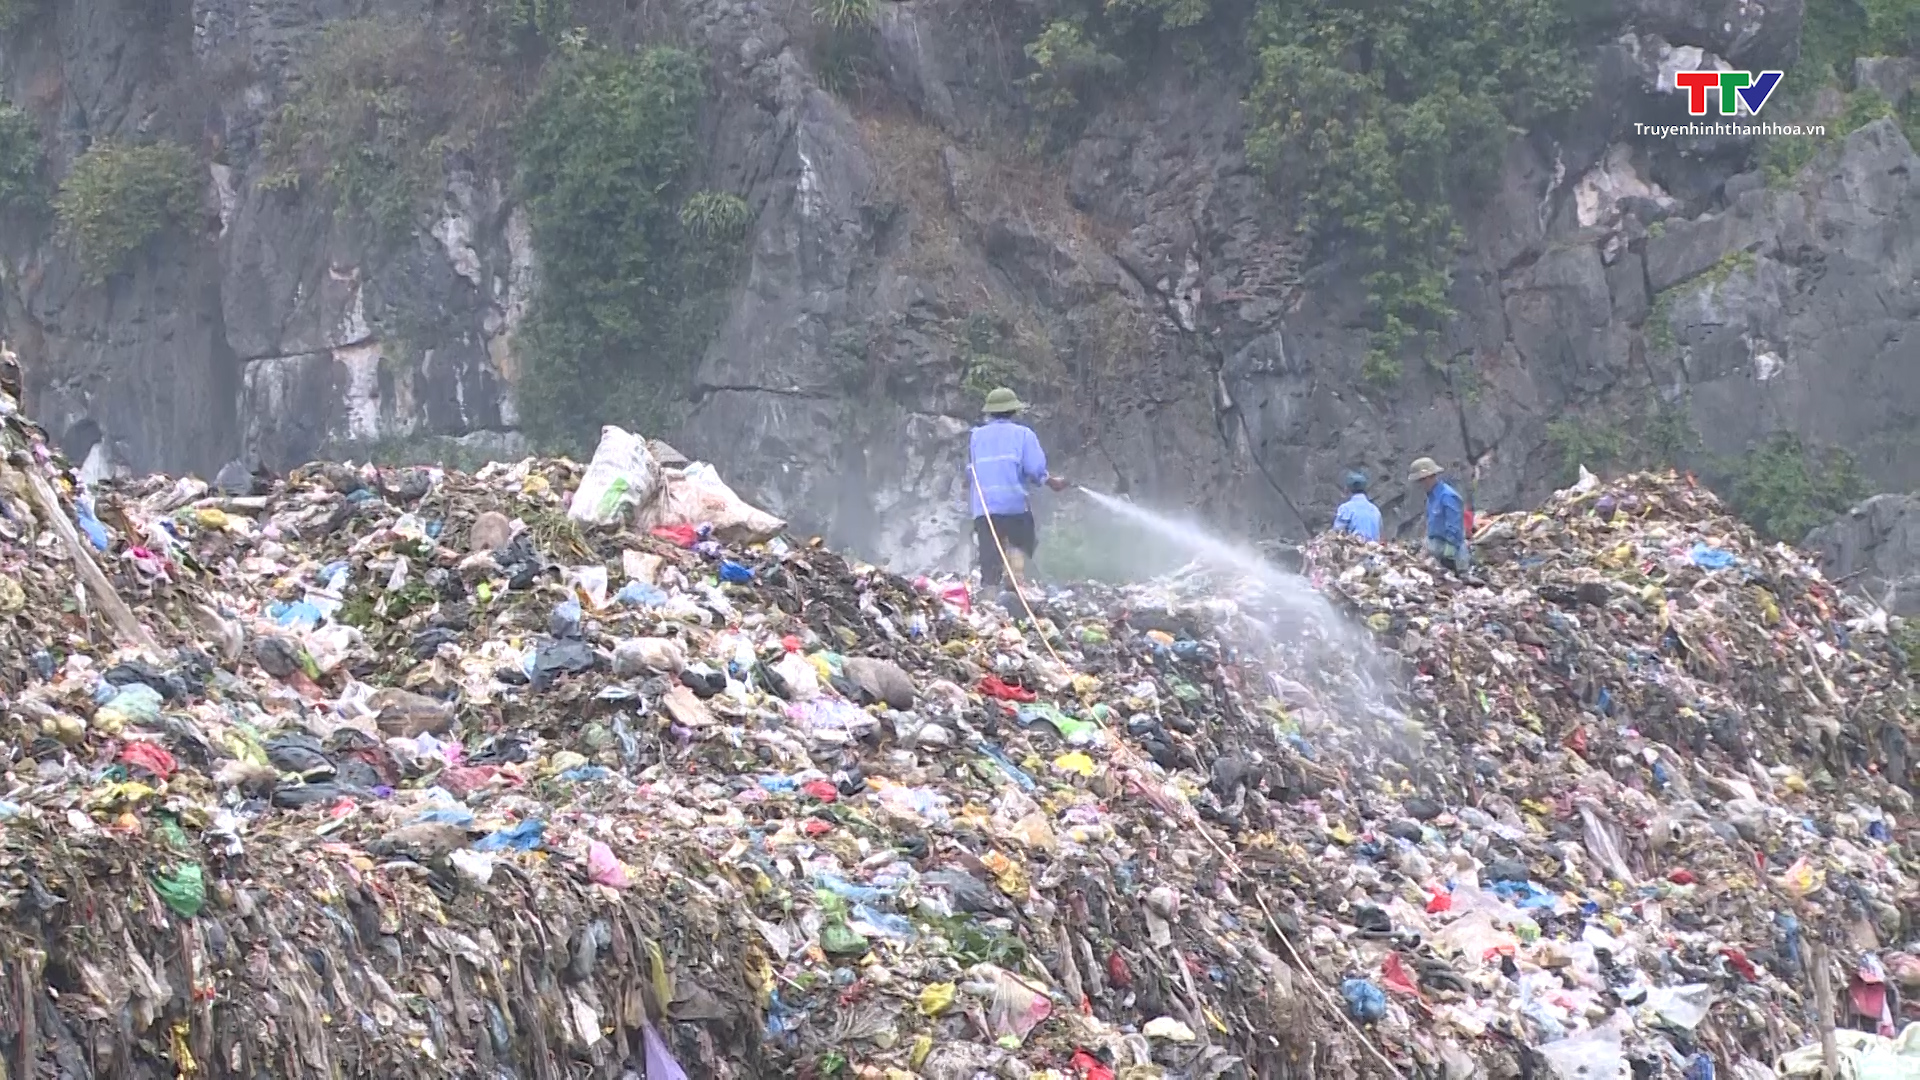 Cần có giải pháp chống quá tải và ô nhiễm môi trường ở bãi rác Đông Nam- Ảnh 3.